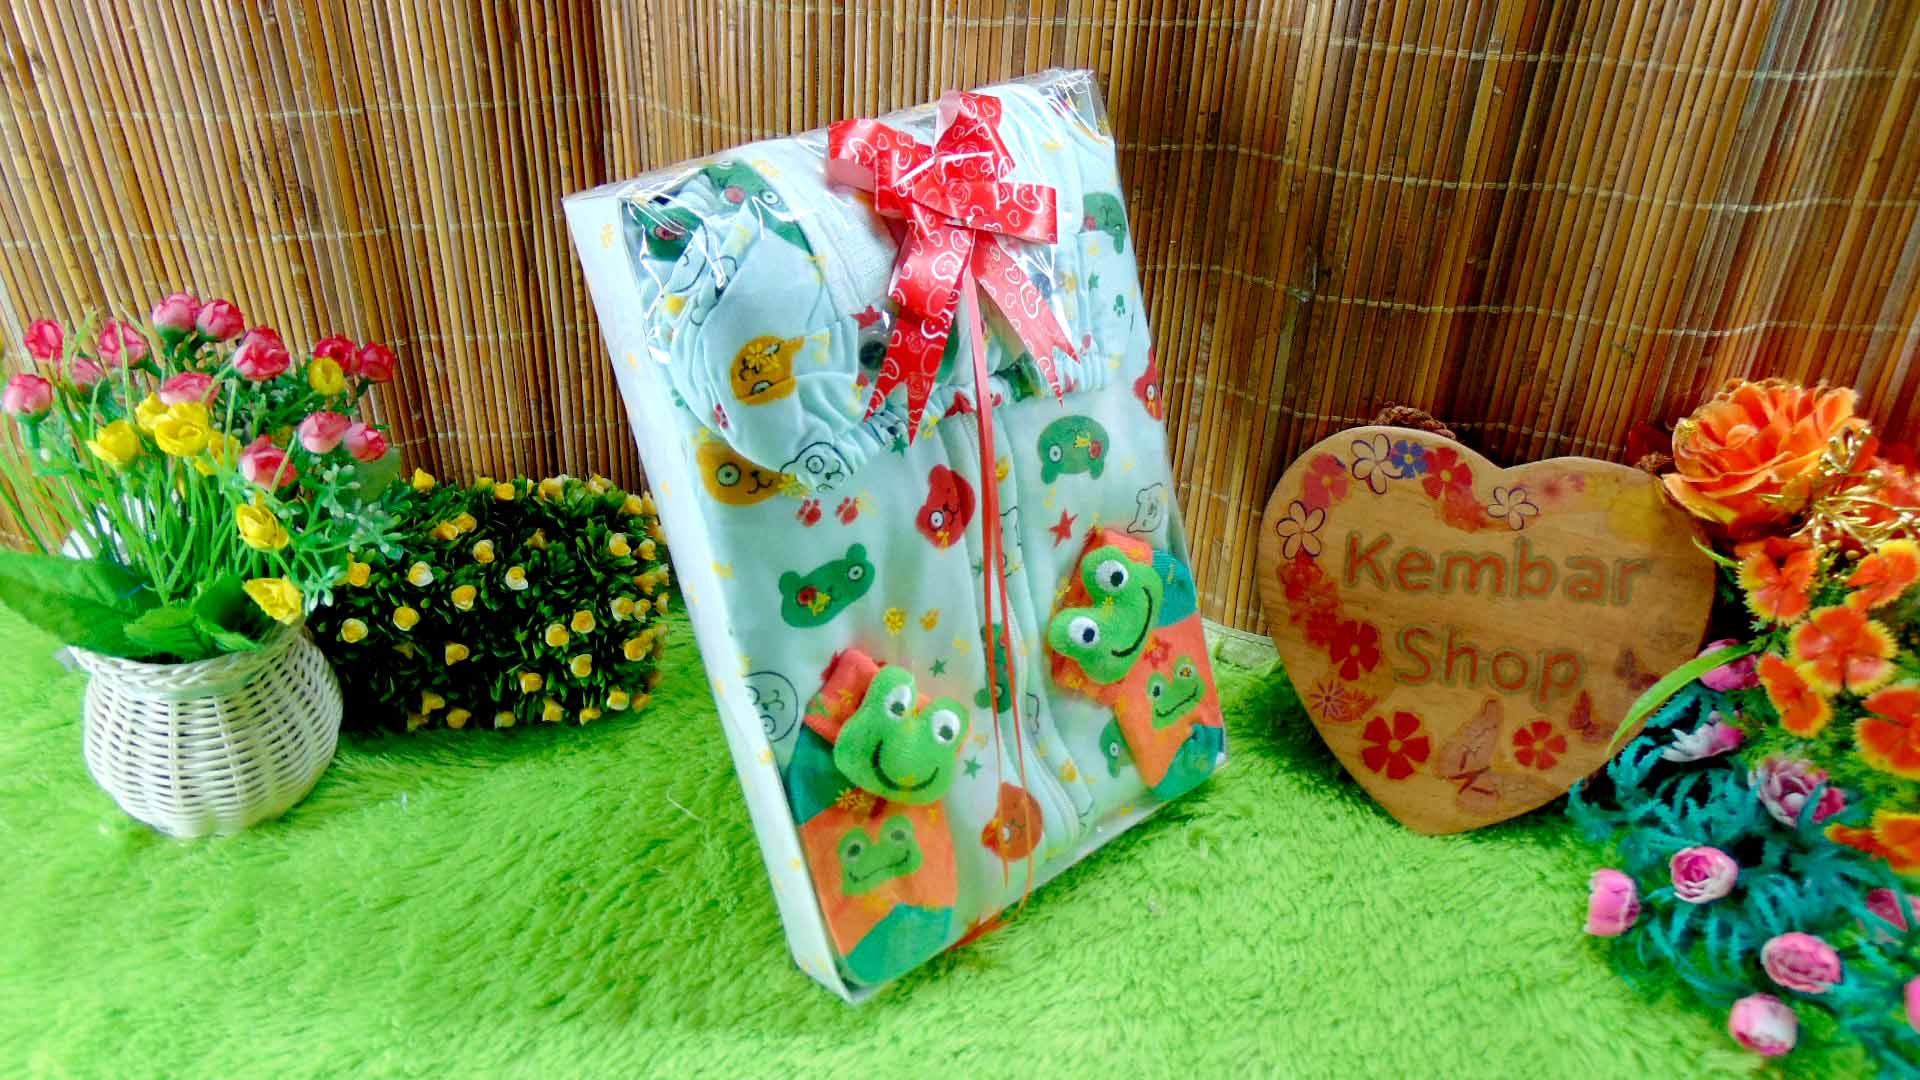 15 FREE KARTU UCAPAN paket kado lahiran bayi baby gift set box jaket plus sock ANEKA motif